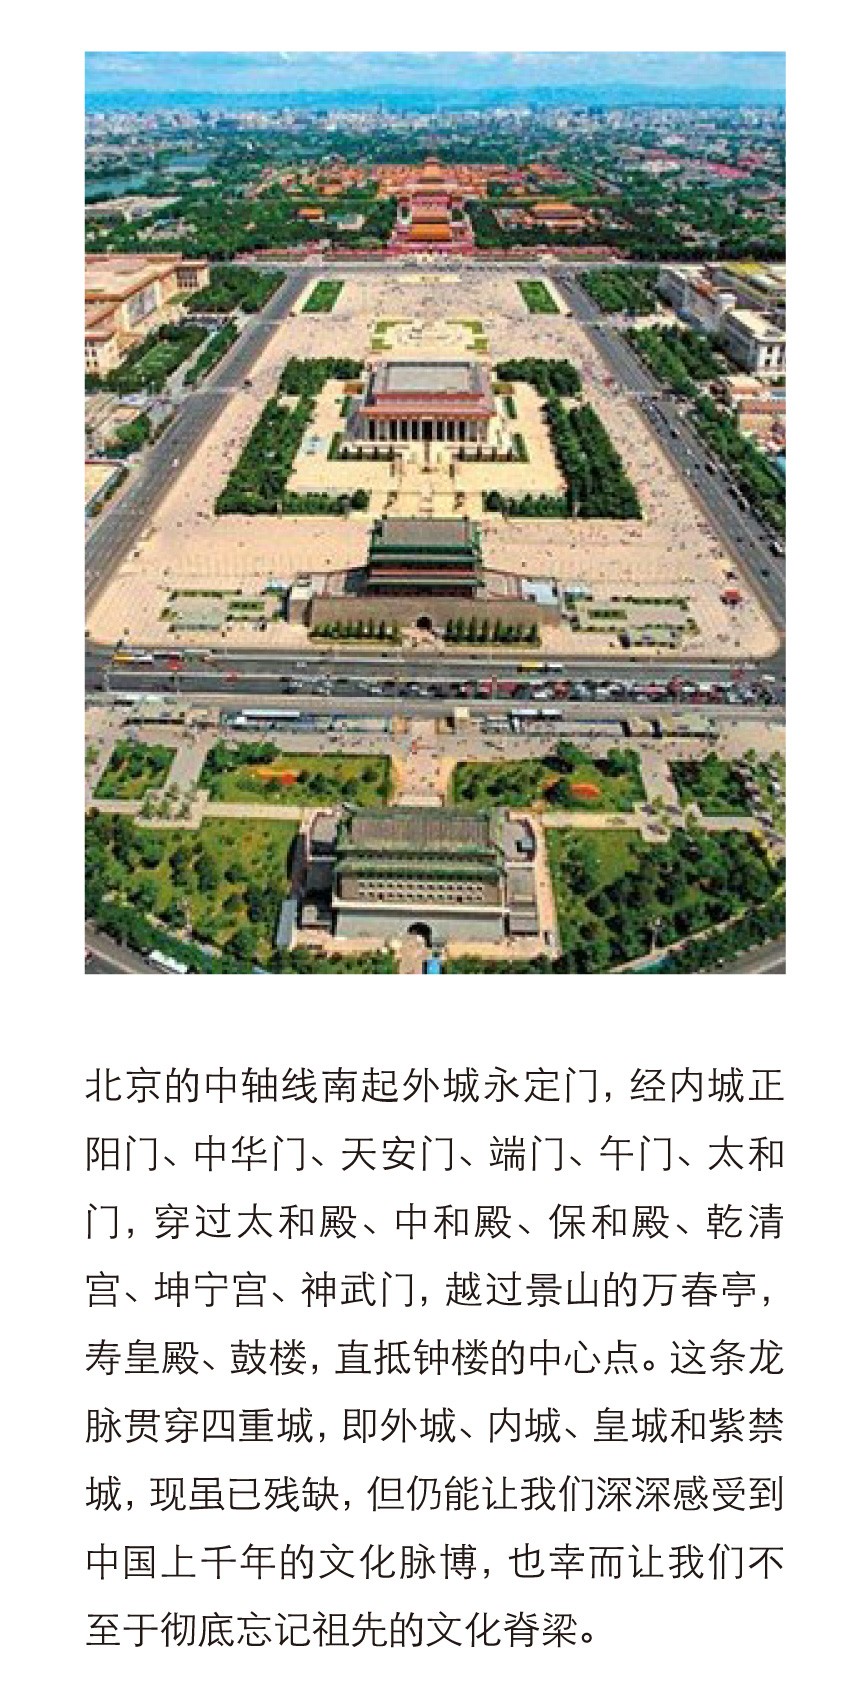 建筑群,但是这些古建都是依附在那个长达8公里的中轴线上,这是老北京